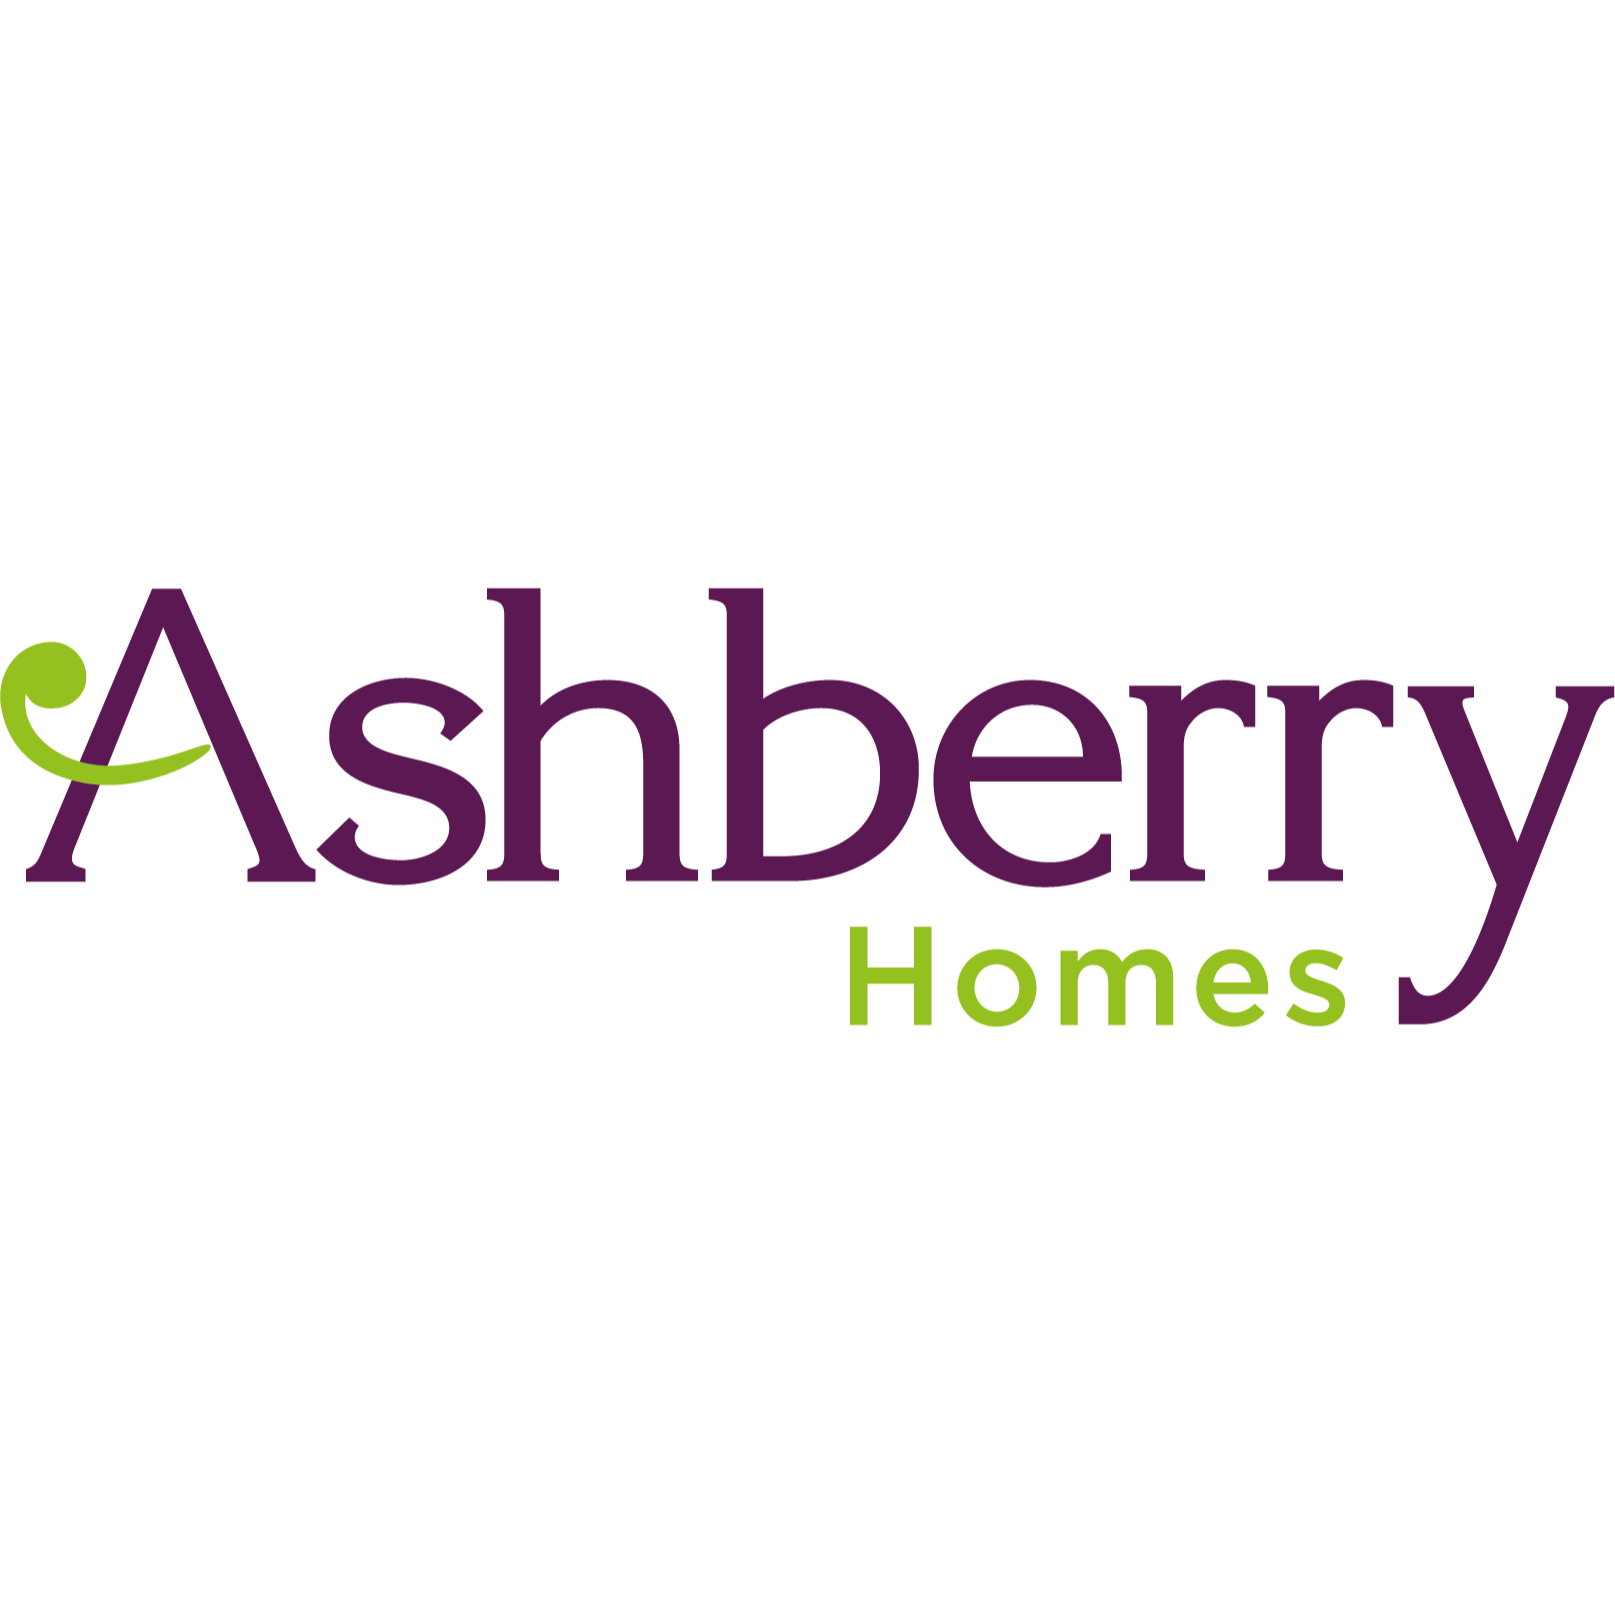 Ashberry Homes - Ashberry at Forster Park - Stevenage, Hertfordshire SG1 4DE - 01438 500880 | ShowMeLocal.com